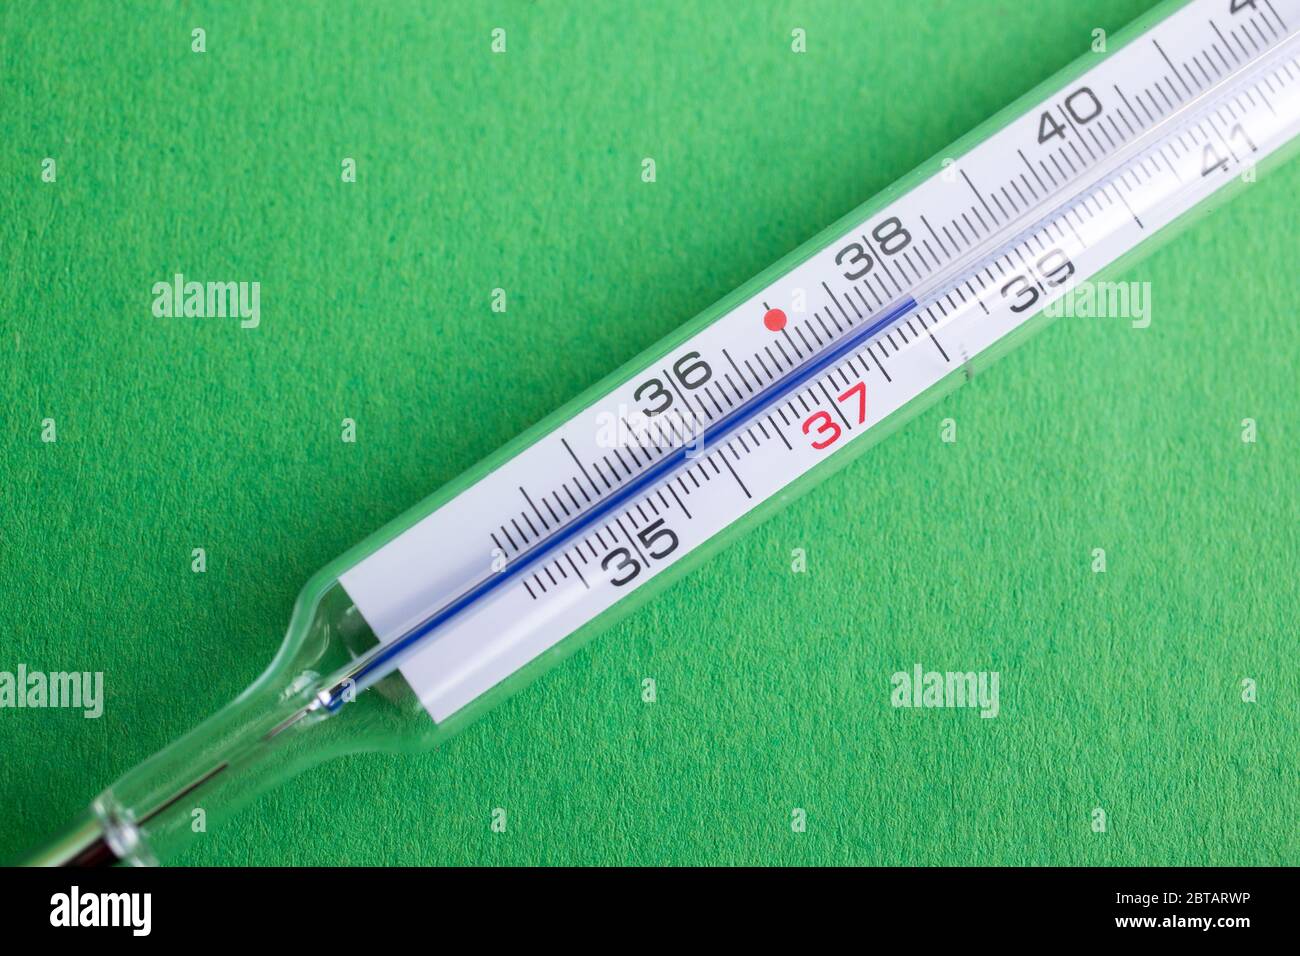 Termometro analogico a mercurio con temperatura di 37,7 °C, febbre